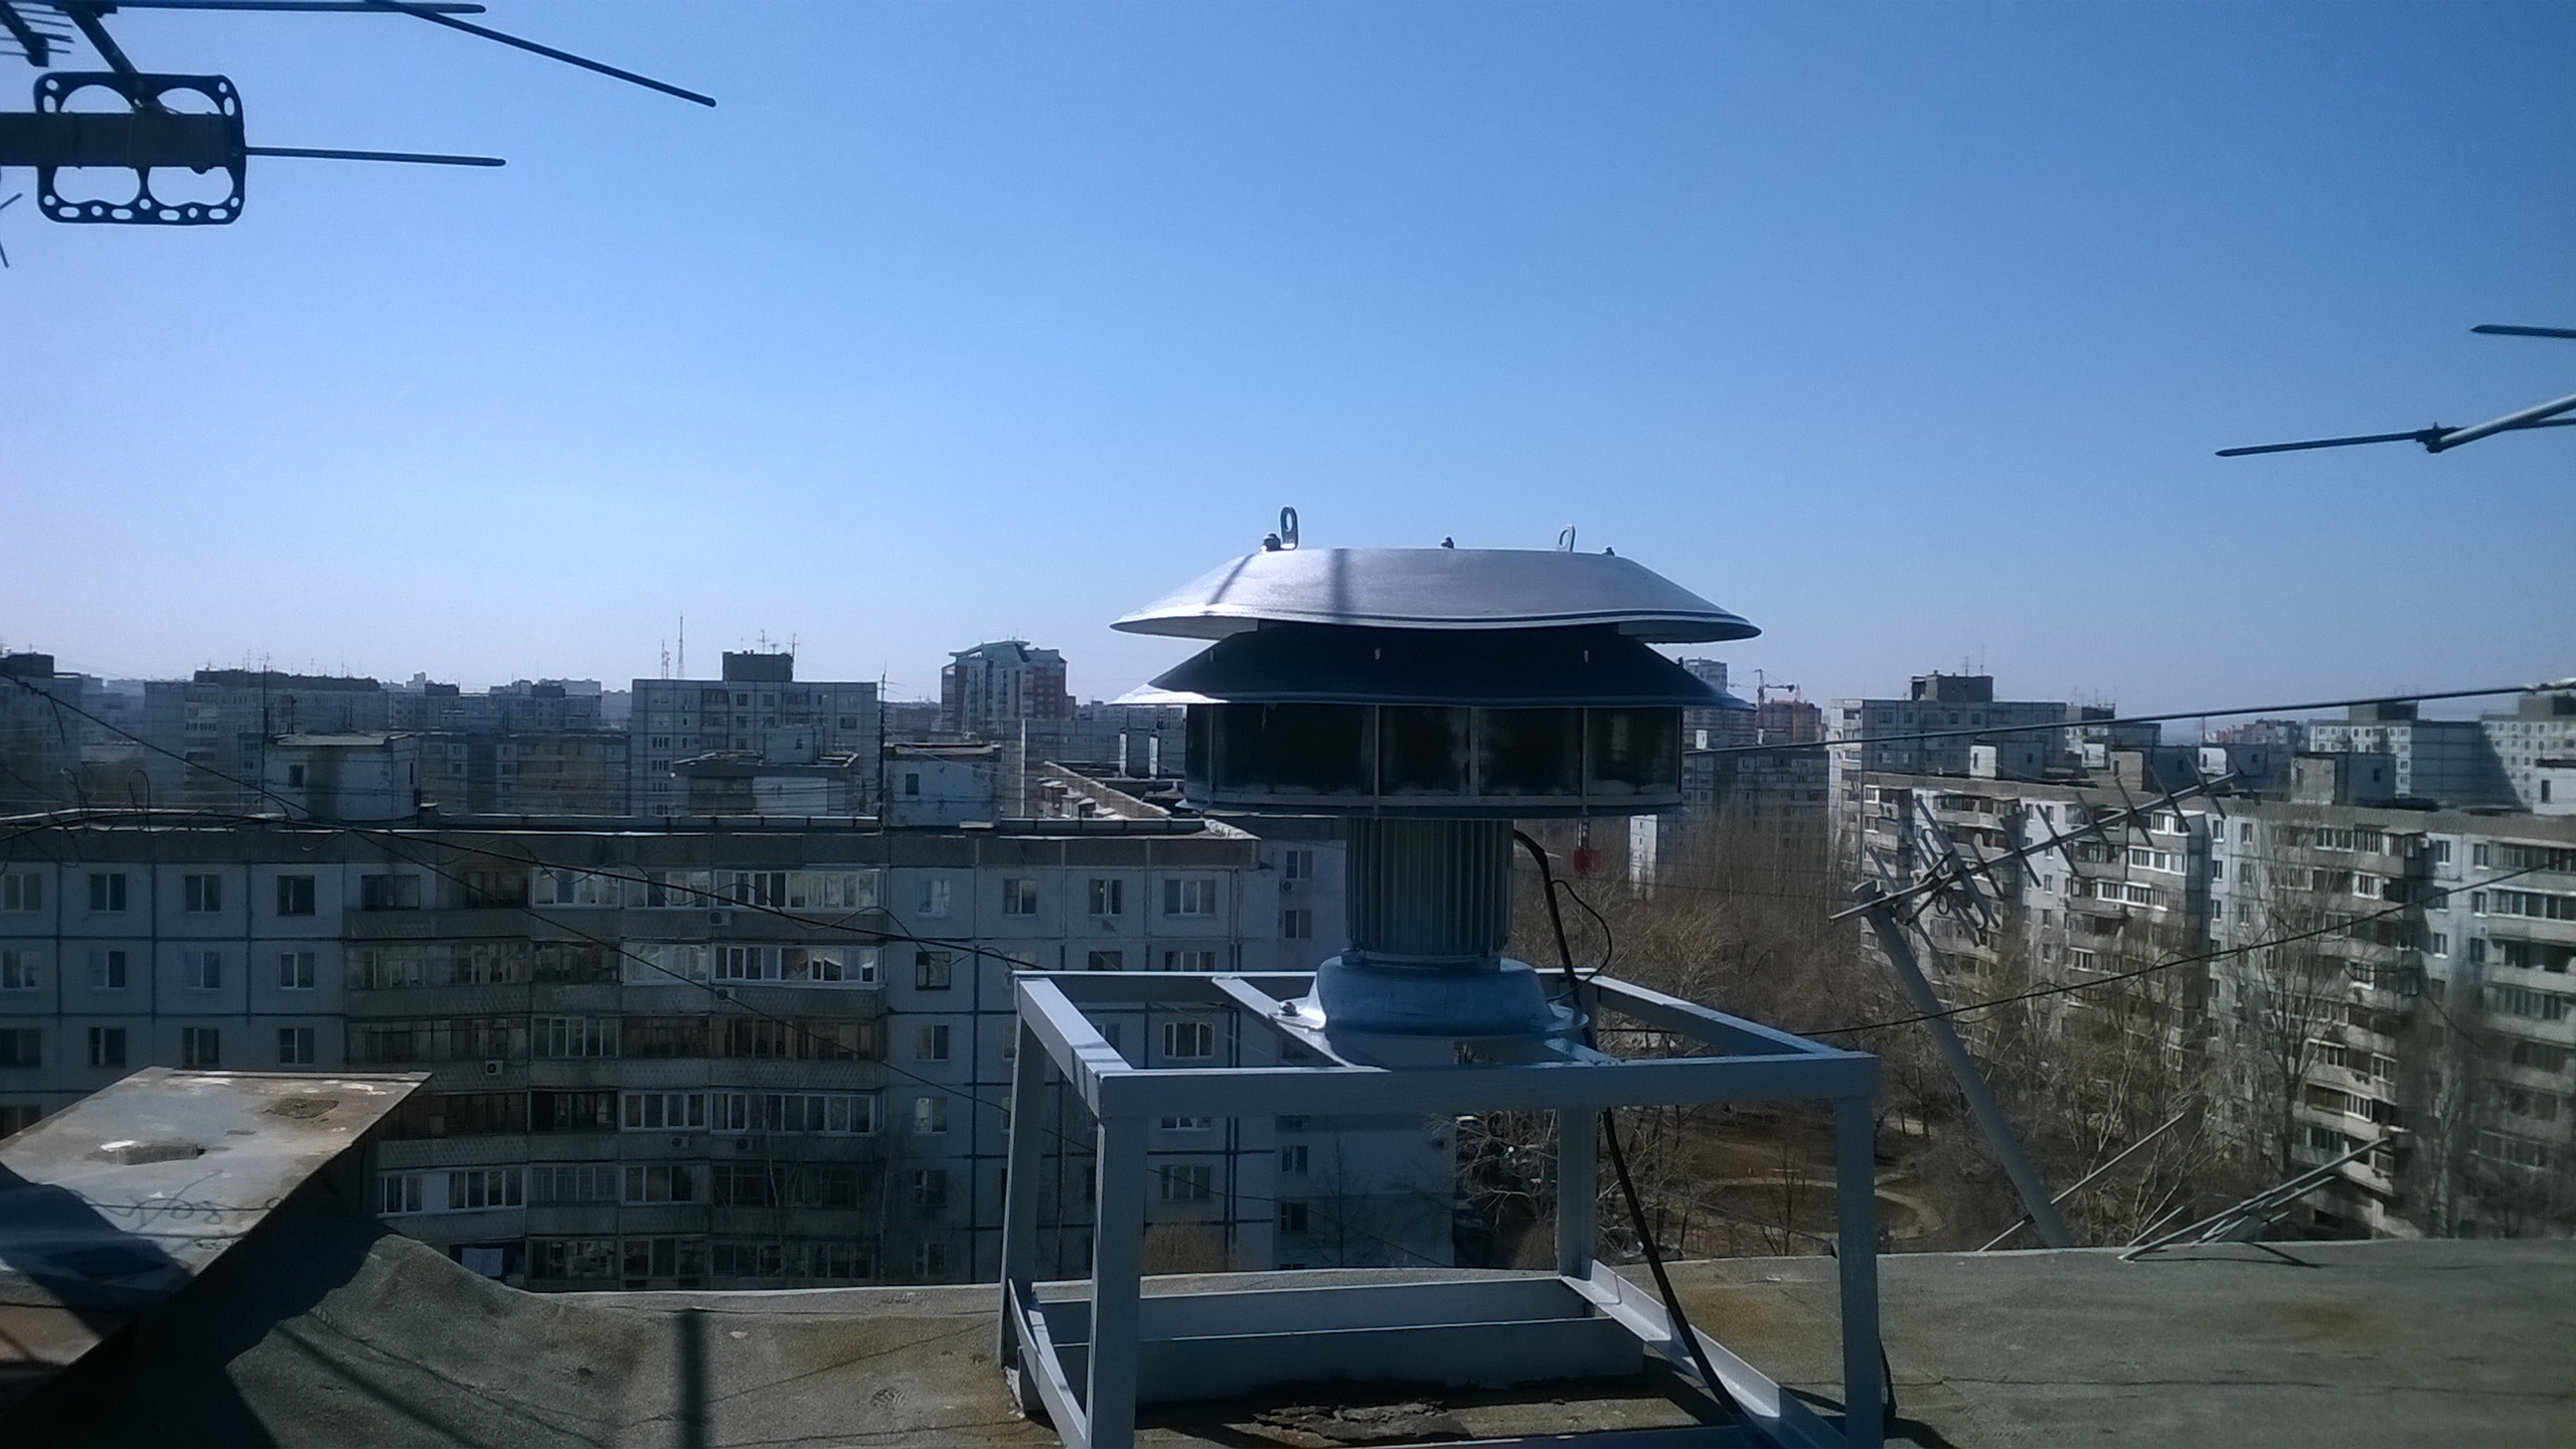 Сирена в ульяновске сегодня. Электросирена в Самаре. Электросирена на крыше. Сирены расположенные на крышах высотных домов. Сирена на крыше многоэтажки.